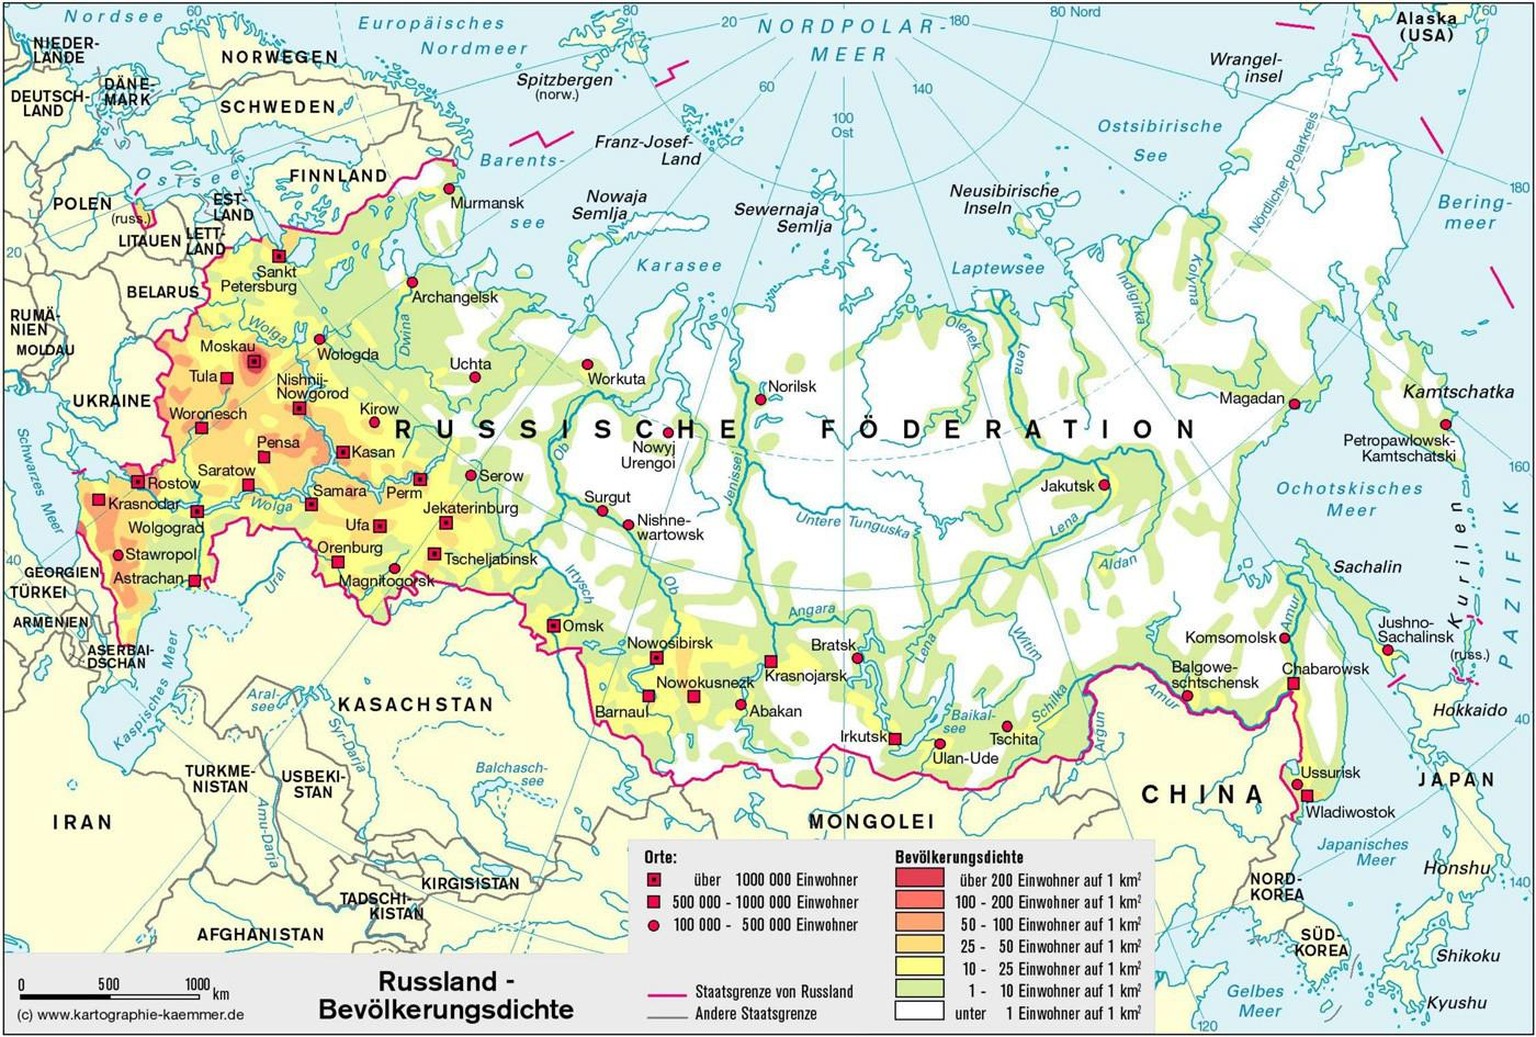 Russland ist riesig, aber weite Gebiete sind nur sehr dünn besiedelt. Teile von Sibirien sind mittlerweile regelrecht entvölkert. 